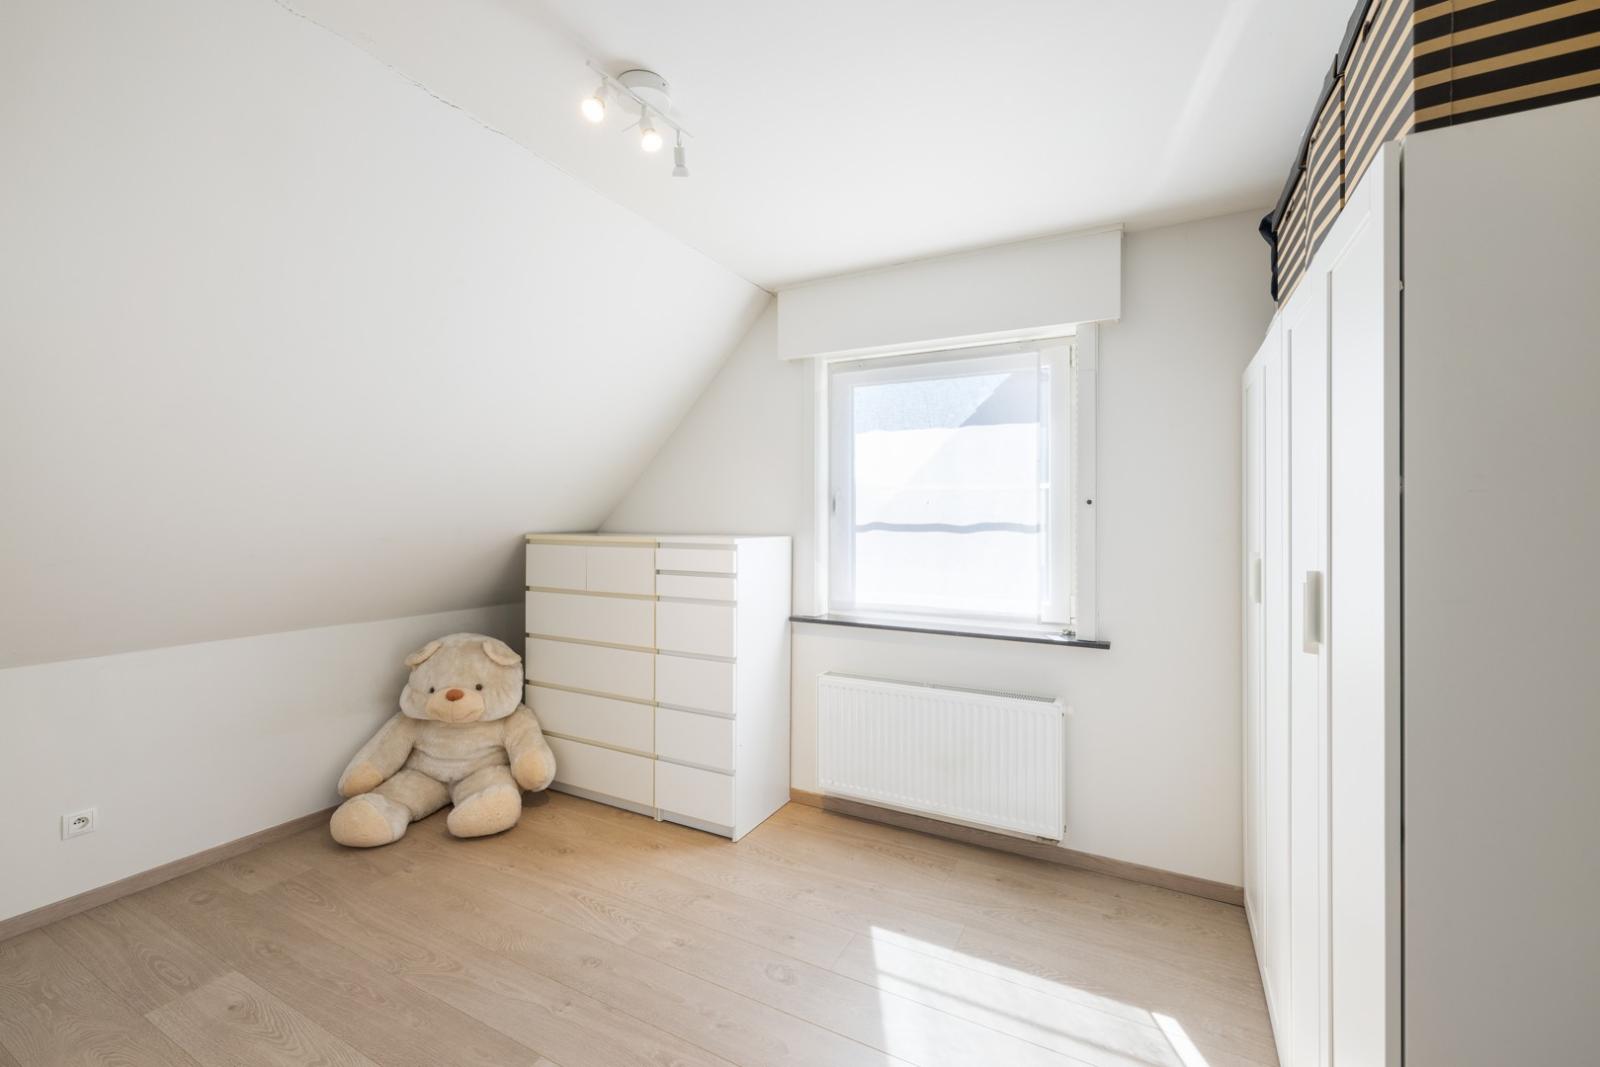 Instapklare & energiezuinige (A-label) HOB met 3 slaapkamers & garage op rustige locatie te Kooigem (Kortrijk)!